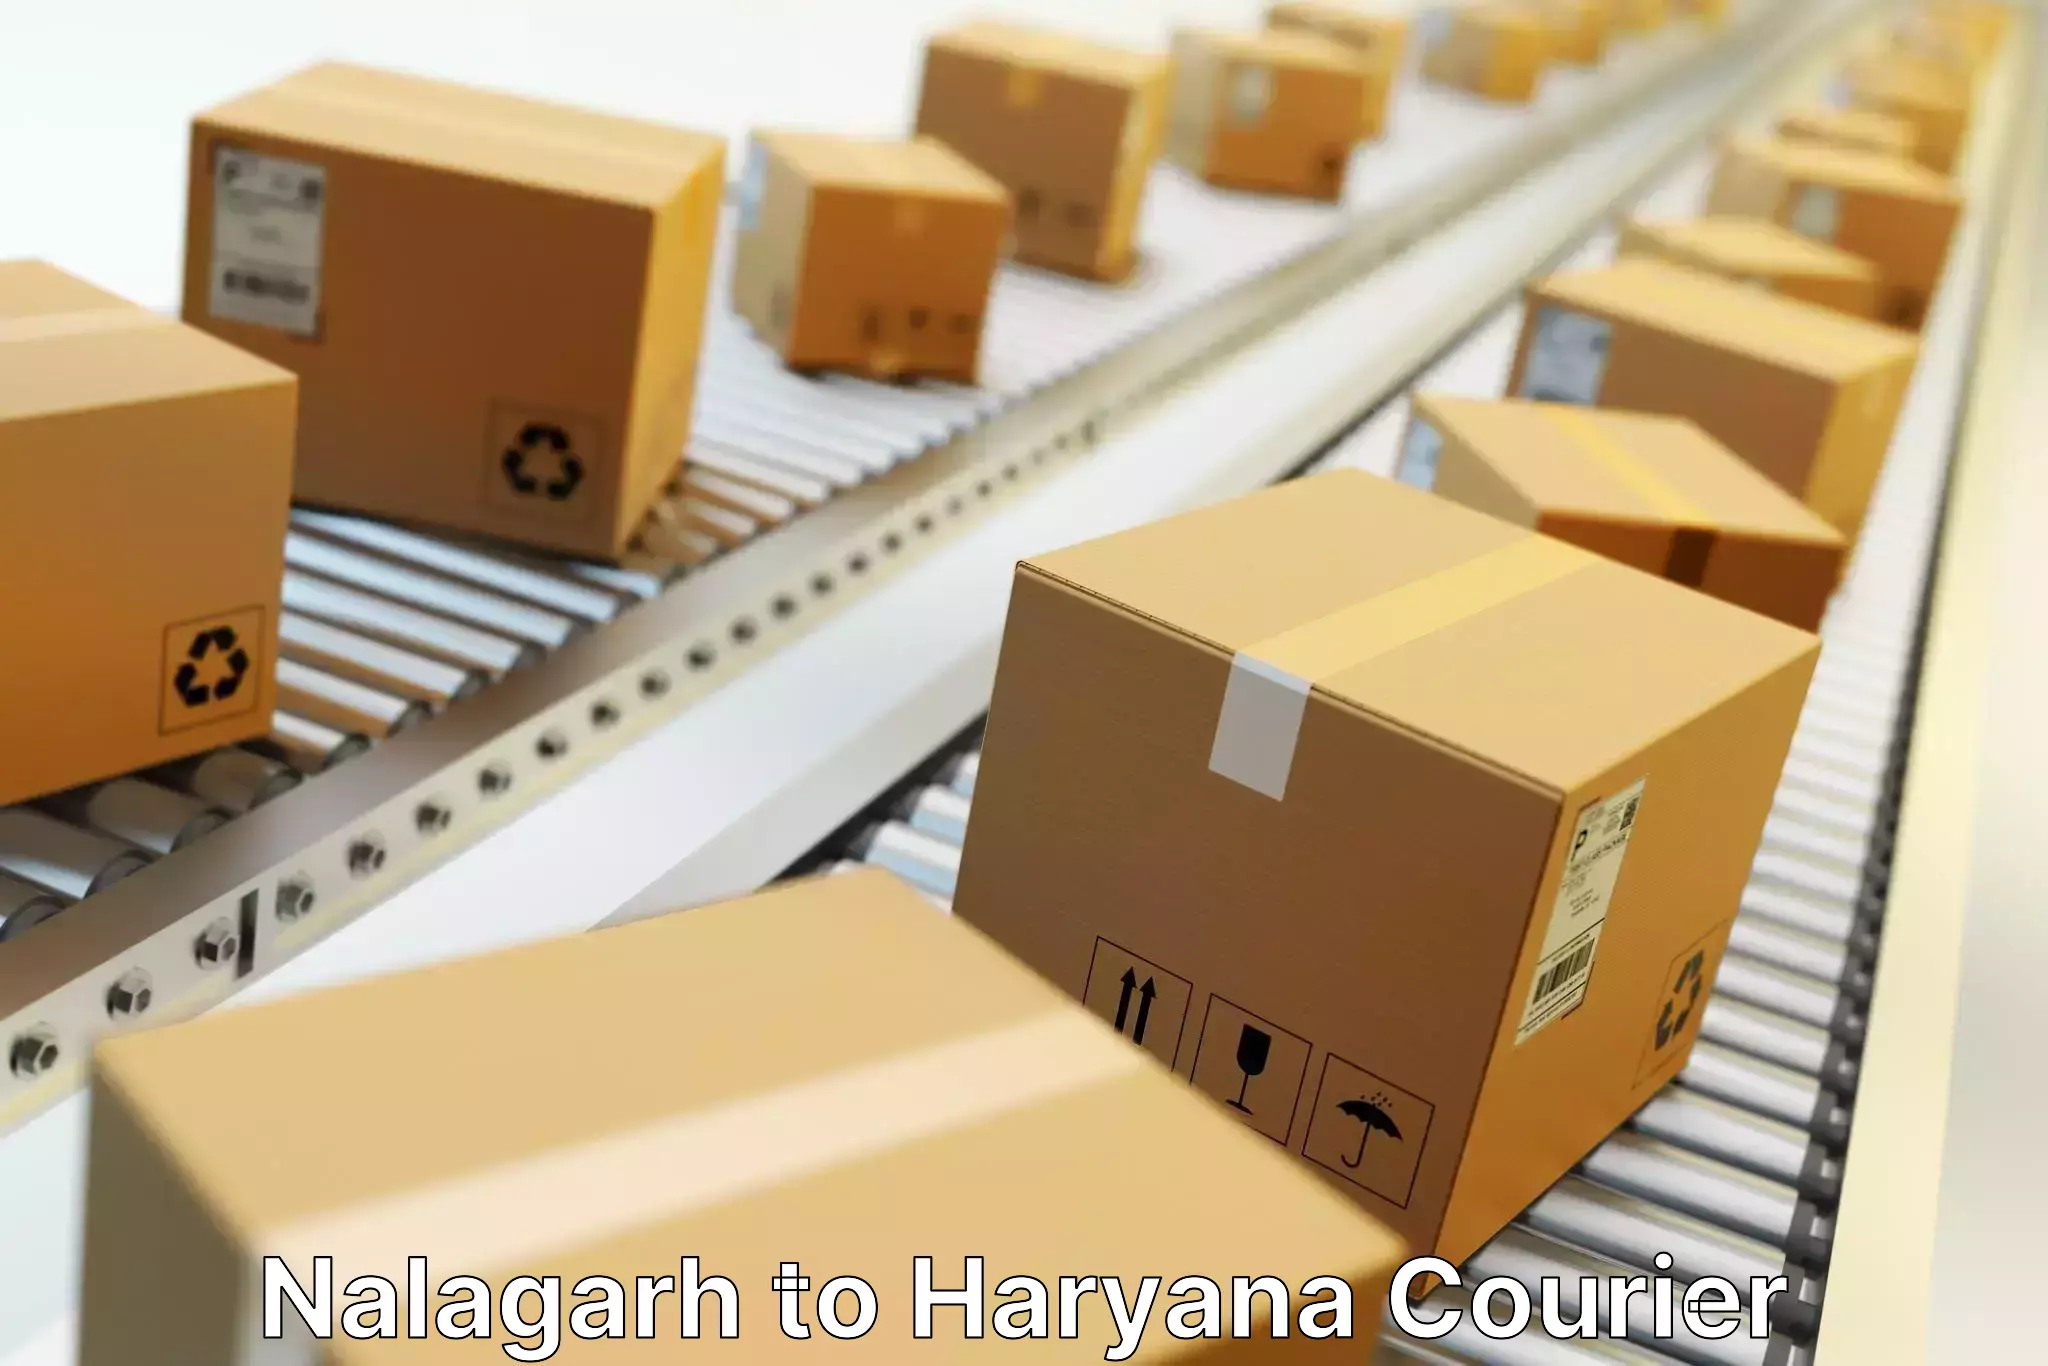 Express mail solutions Nalagarh to Shahabad Markanda